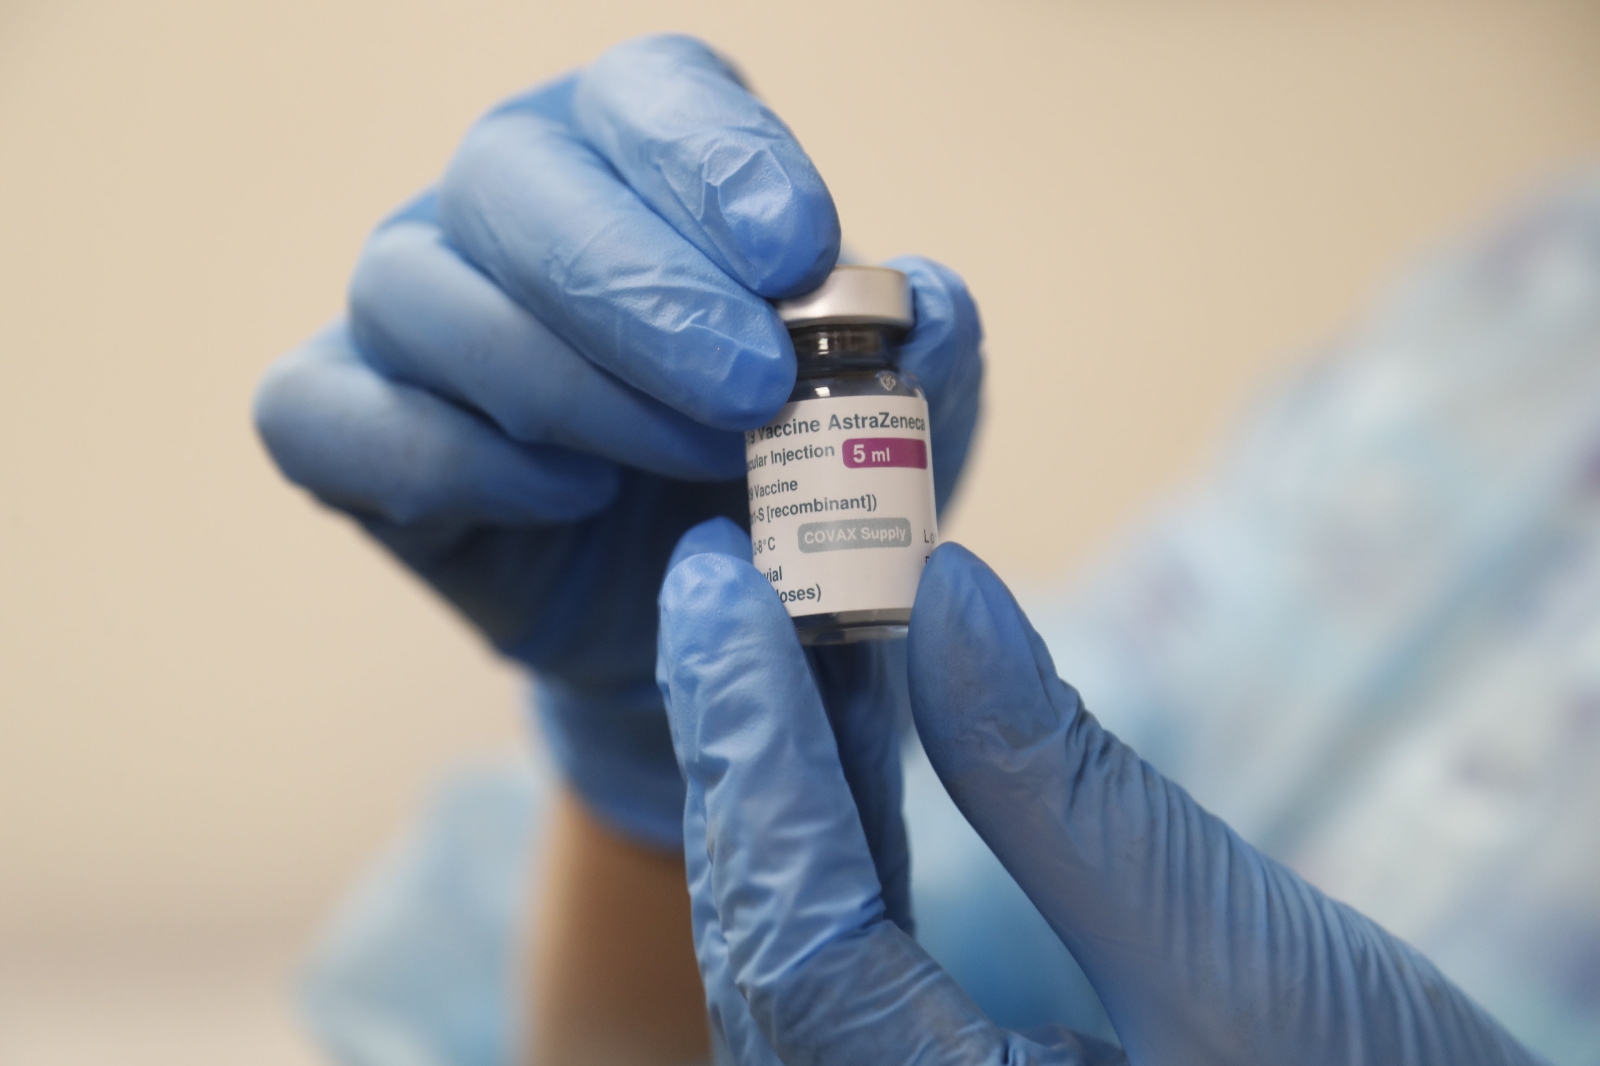 ABD’nin yaklaşık 60 milyon doz AstraZeneca aşısı dağıtması bekleniyor